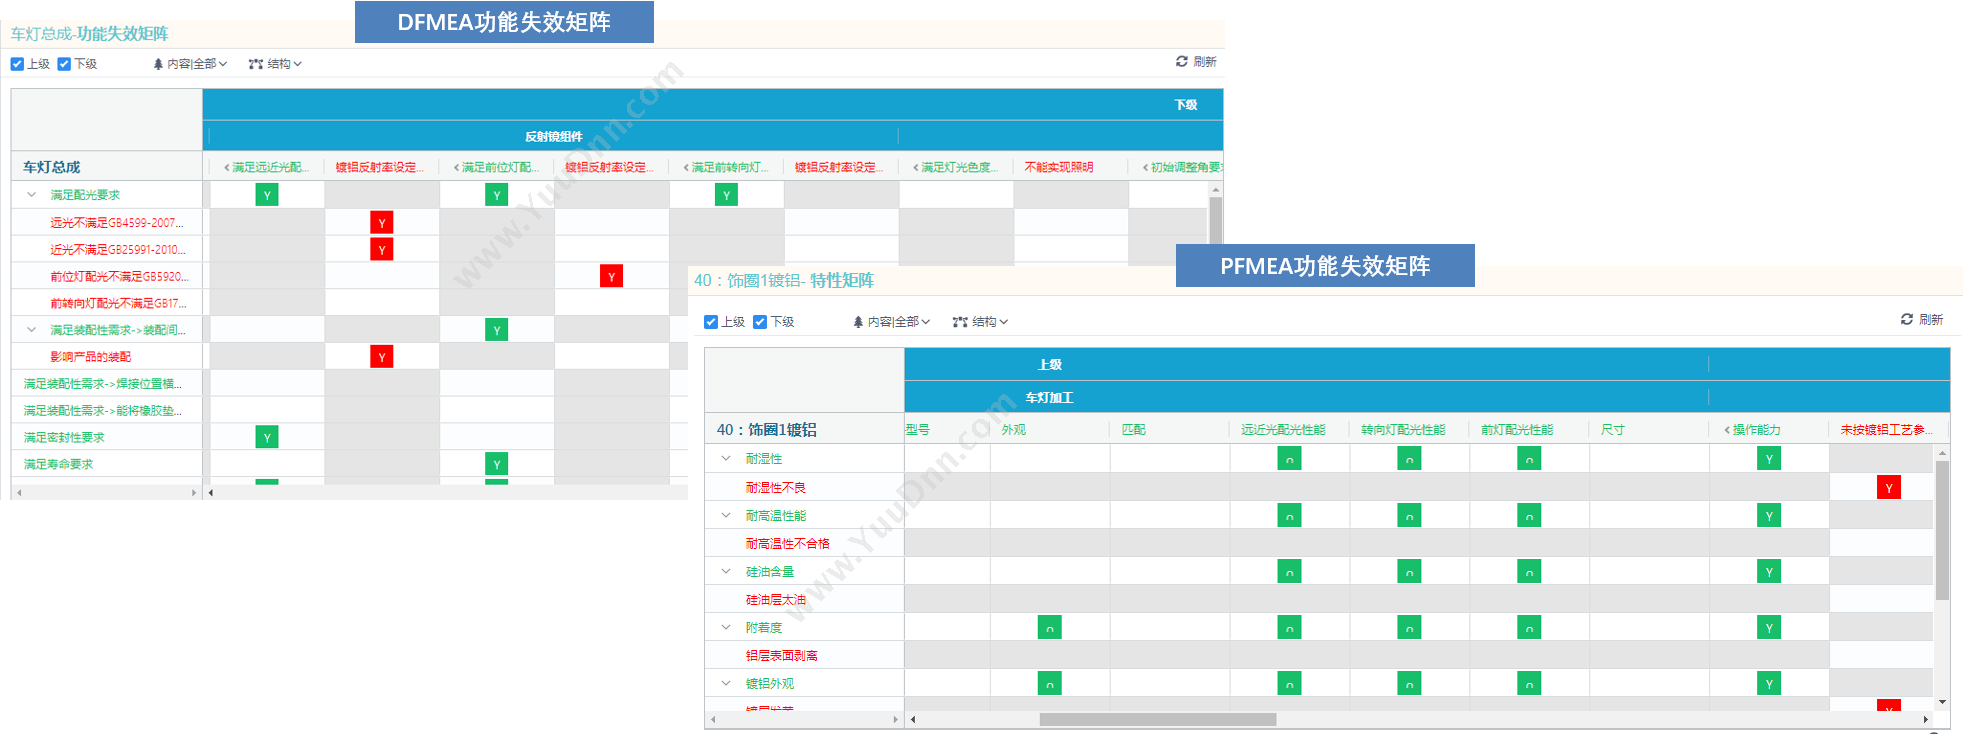 聪脉（上海）信息 FMEA Master 质量管理QMS